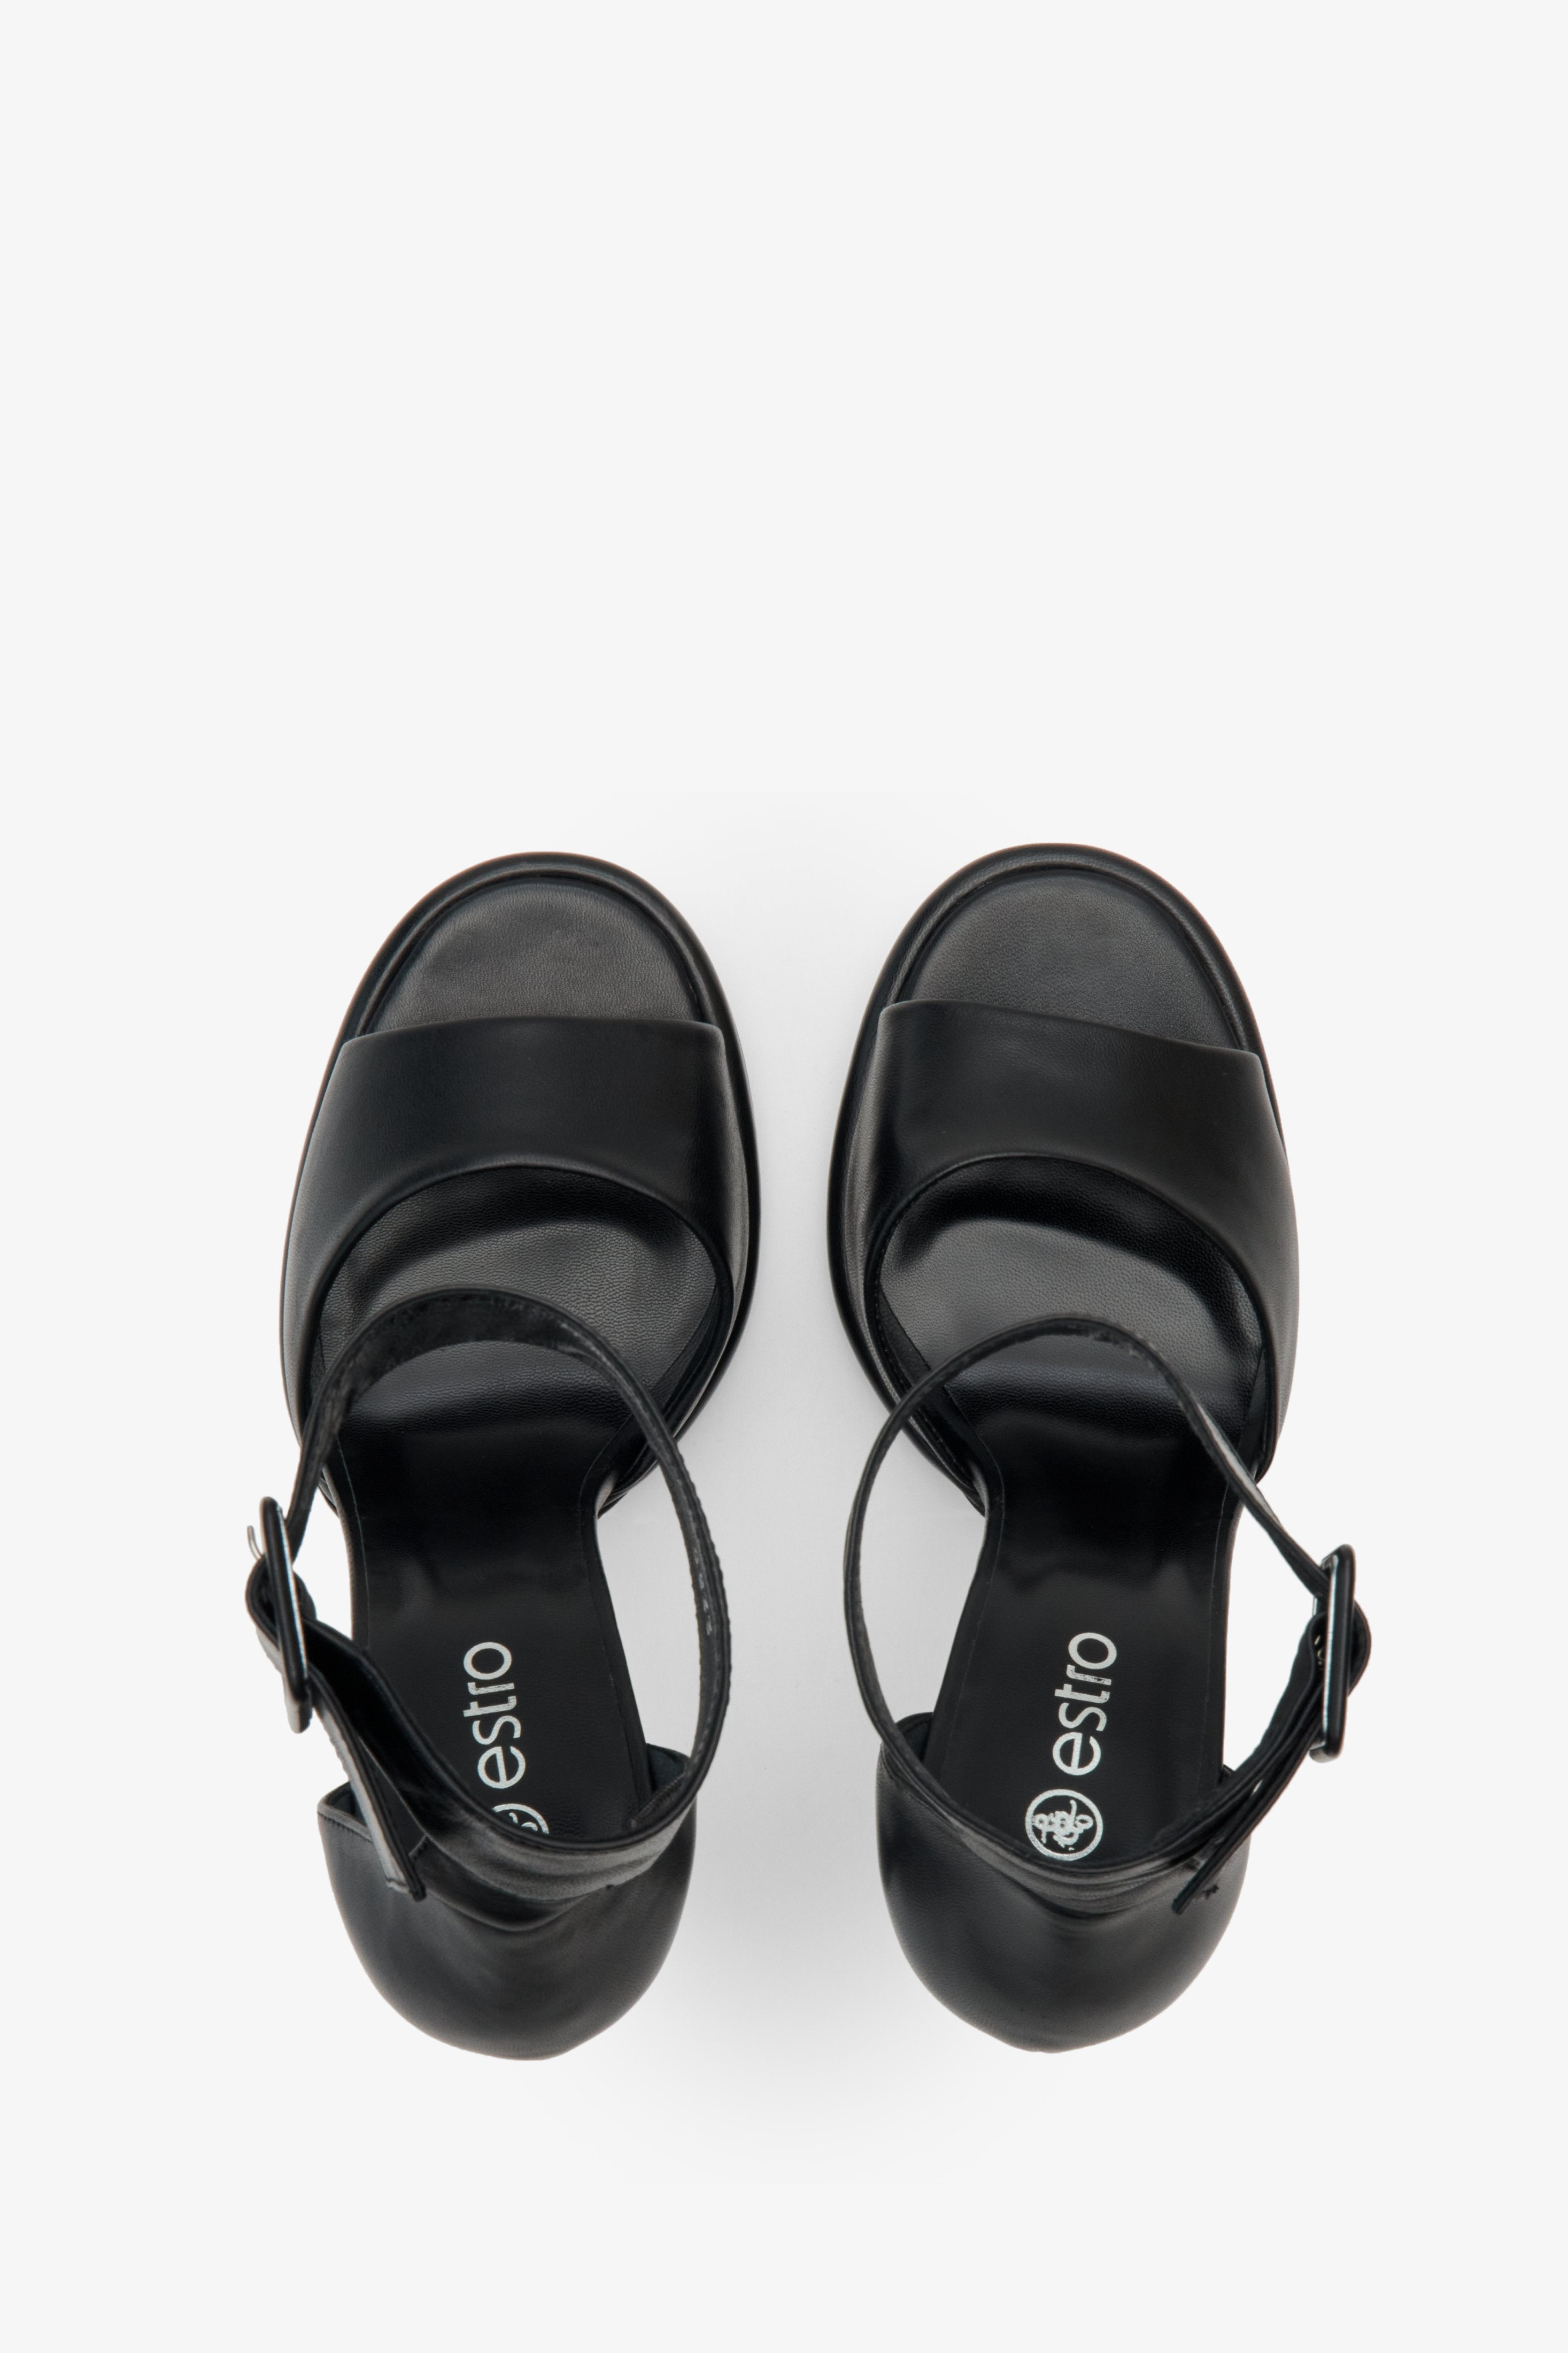 Damskie, lekkie sandały na szpilce zapinane na kostce Estro ze skóry naturalnej - prezentacja obuwia z góry w kolorze czarnym.